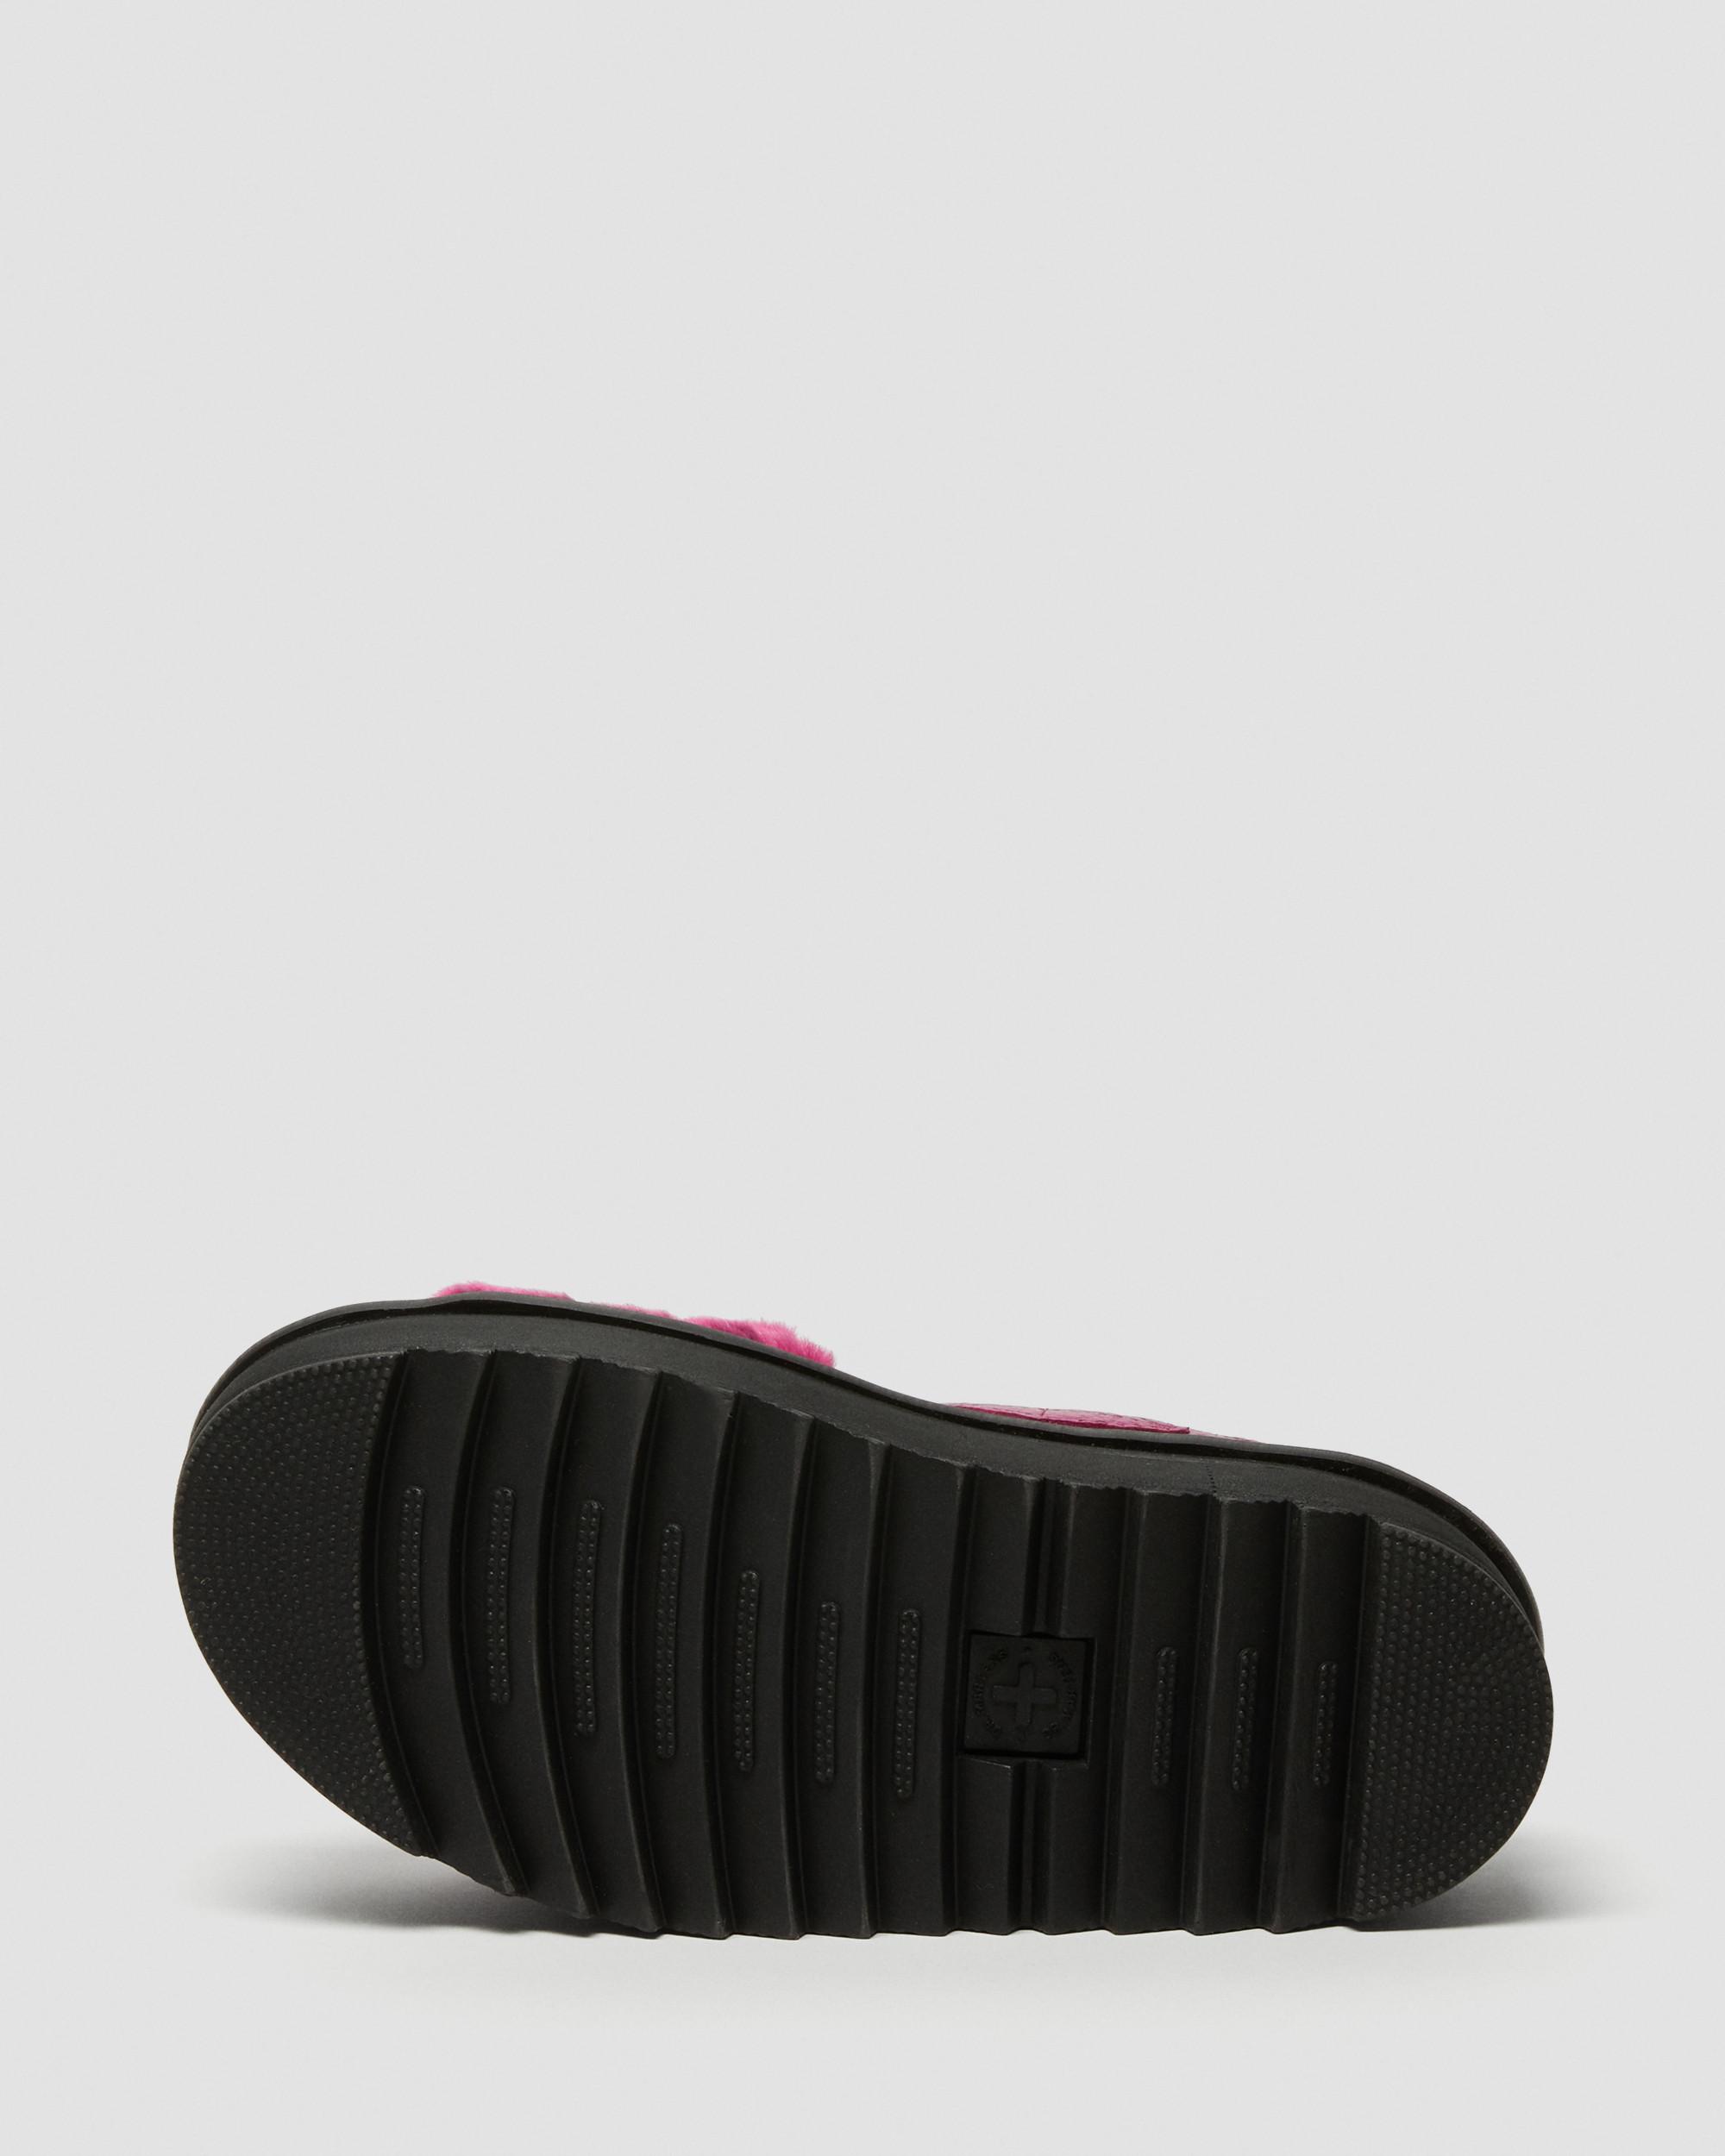 https://i1.adis.ws/i/drmartens/26921673.88.jpg?$large$Voss Fluffy Faux Fur Platform Sandals Dr. Martens